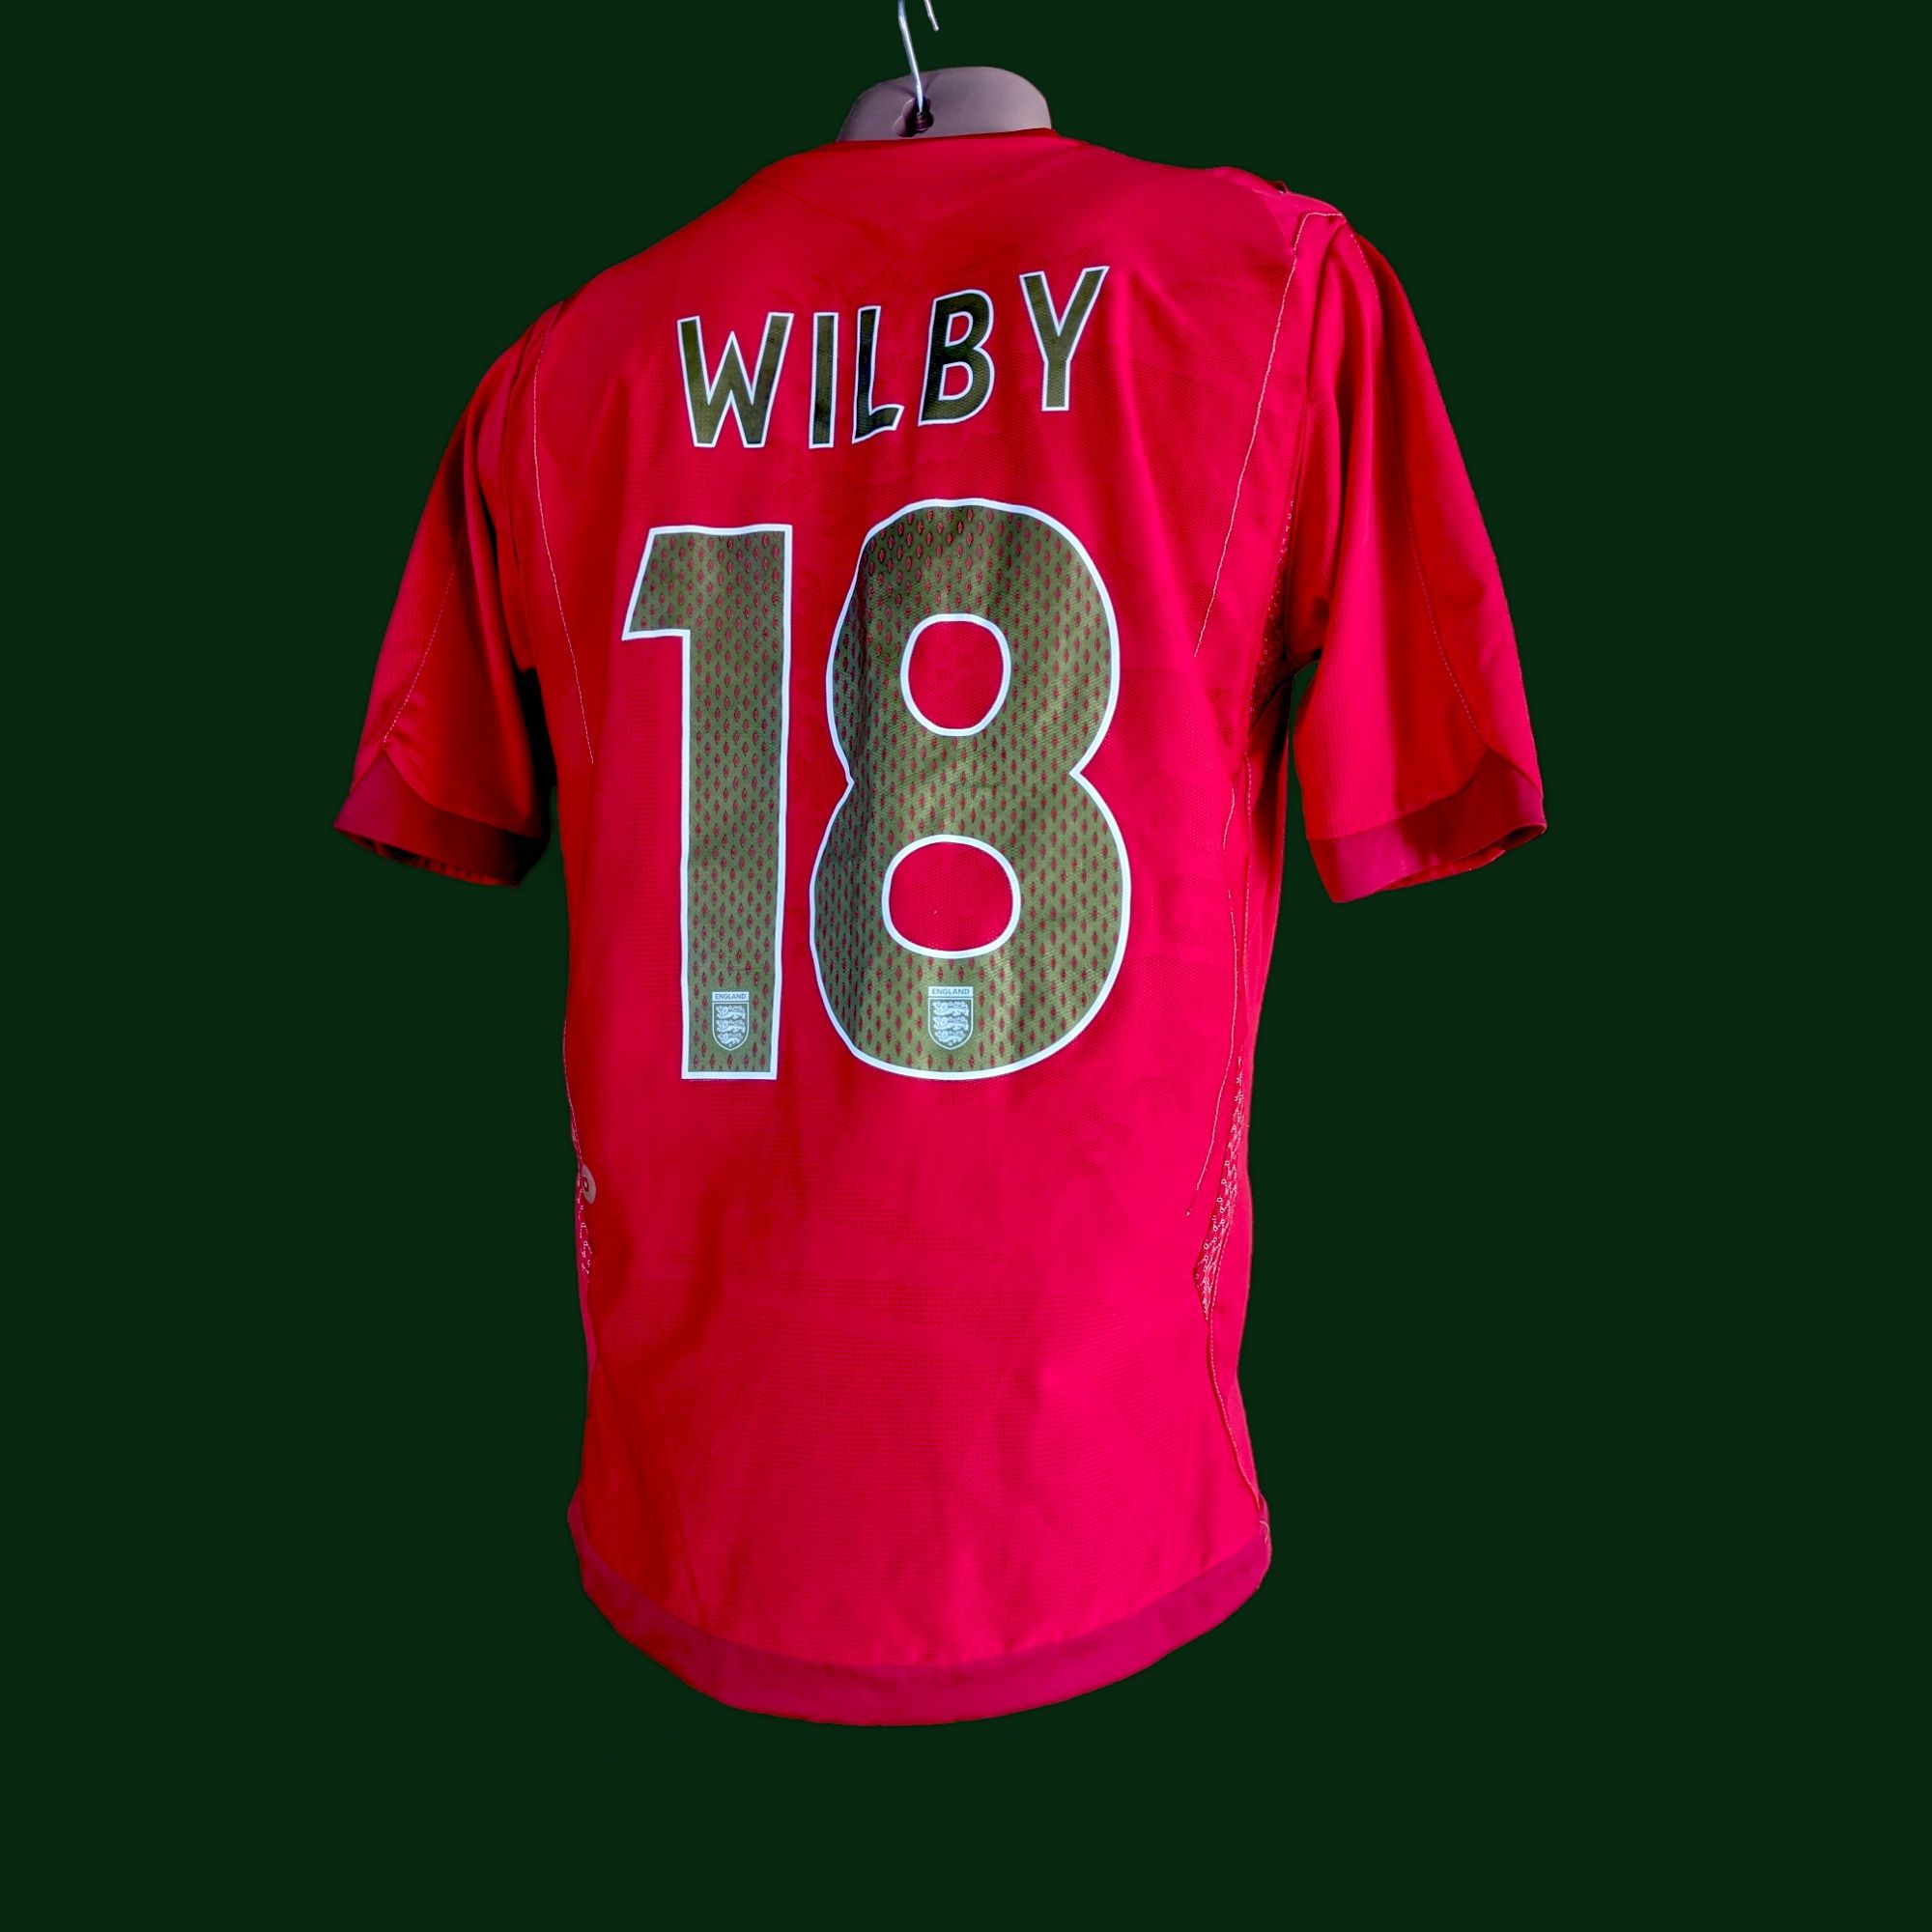 Бу футболка England wilby 18